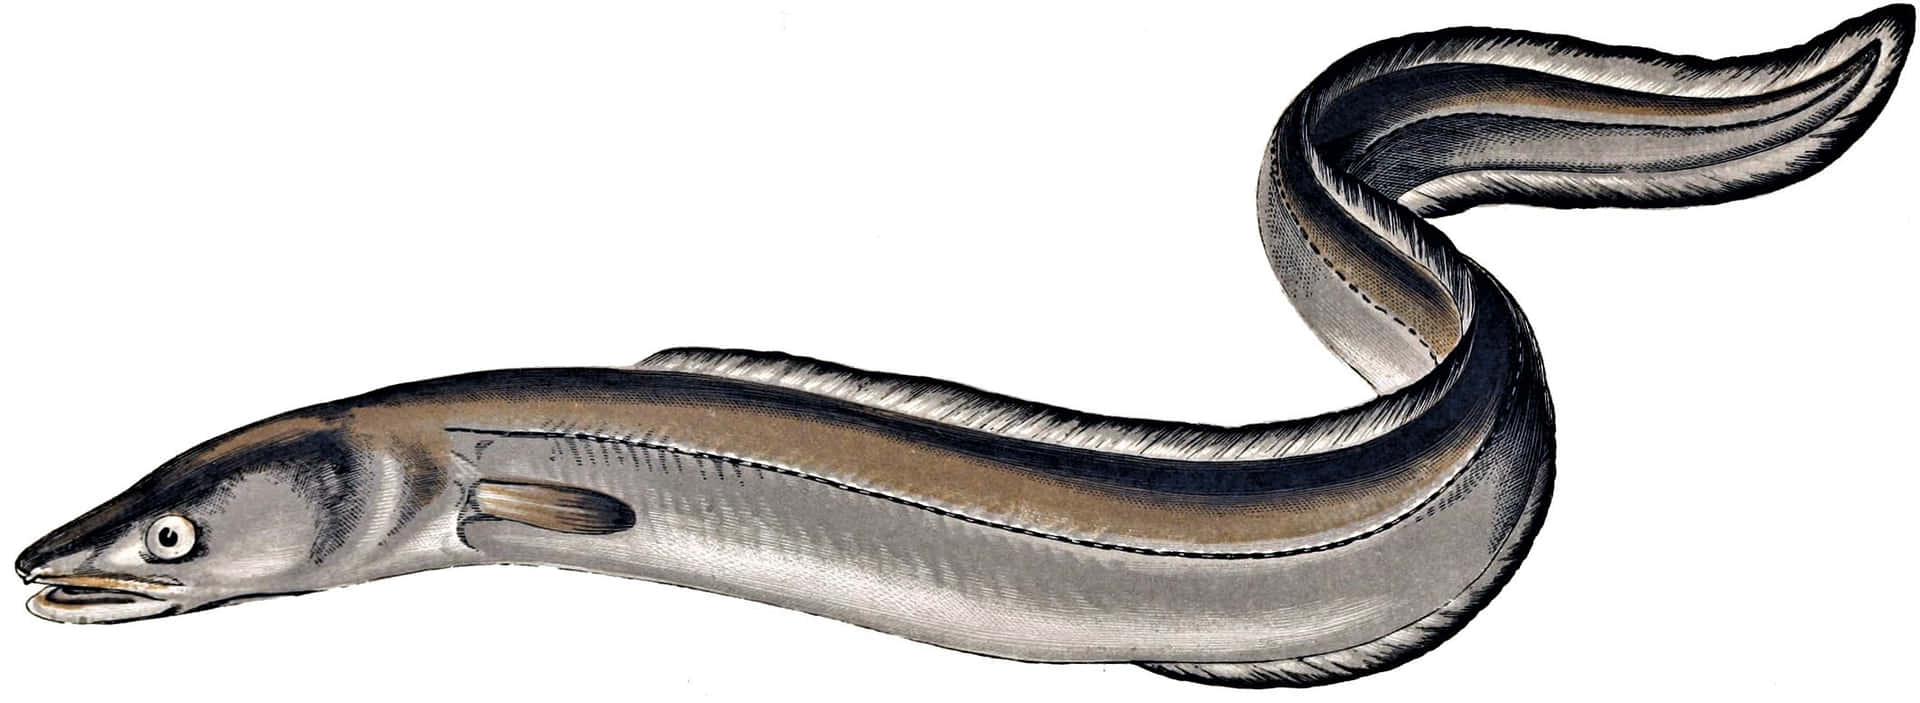 Conger Eel Illustration Wallpaper